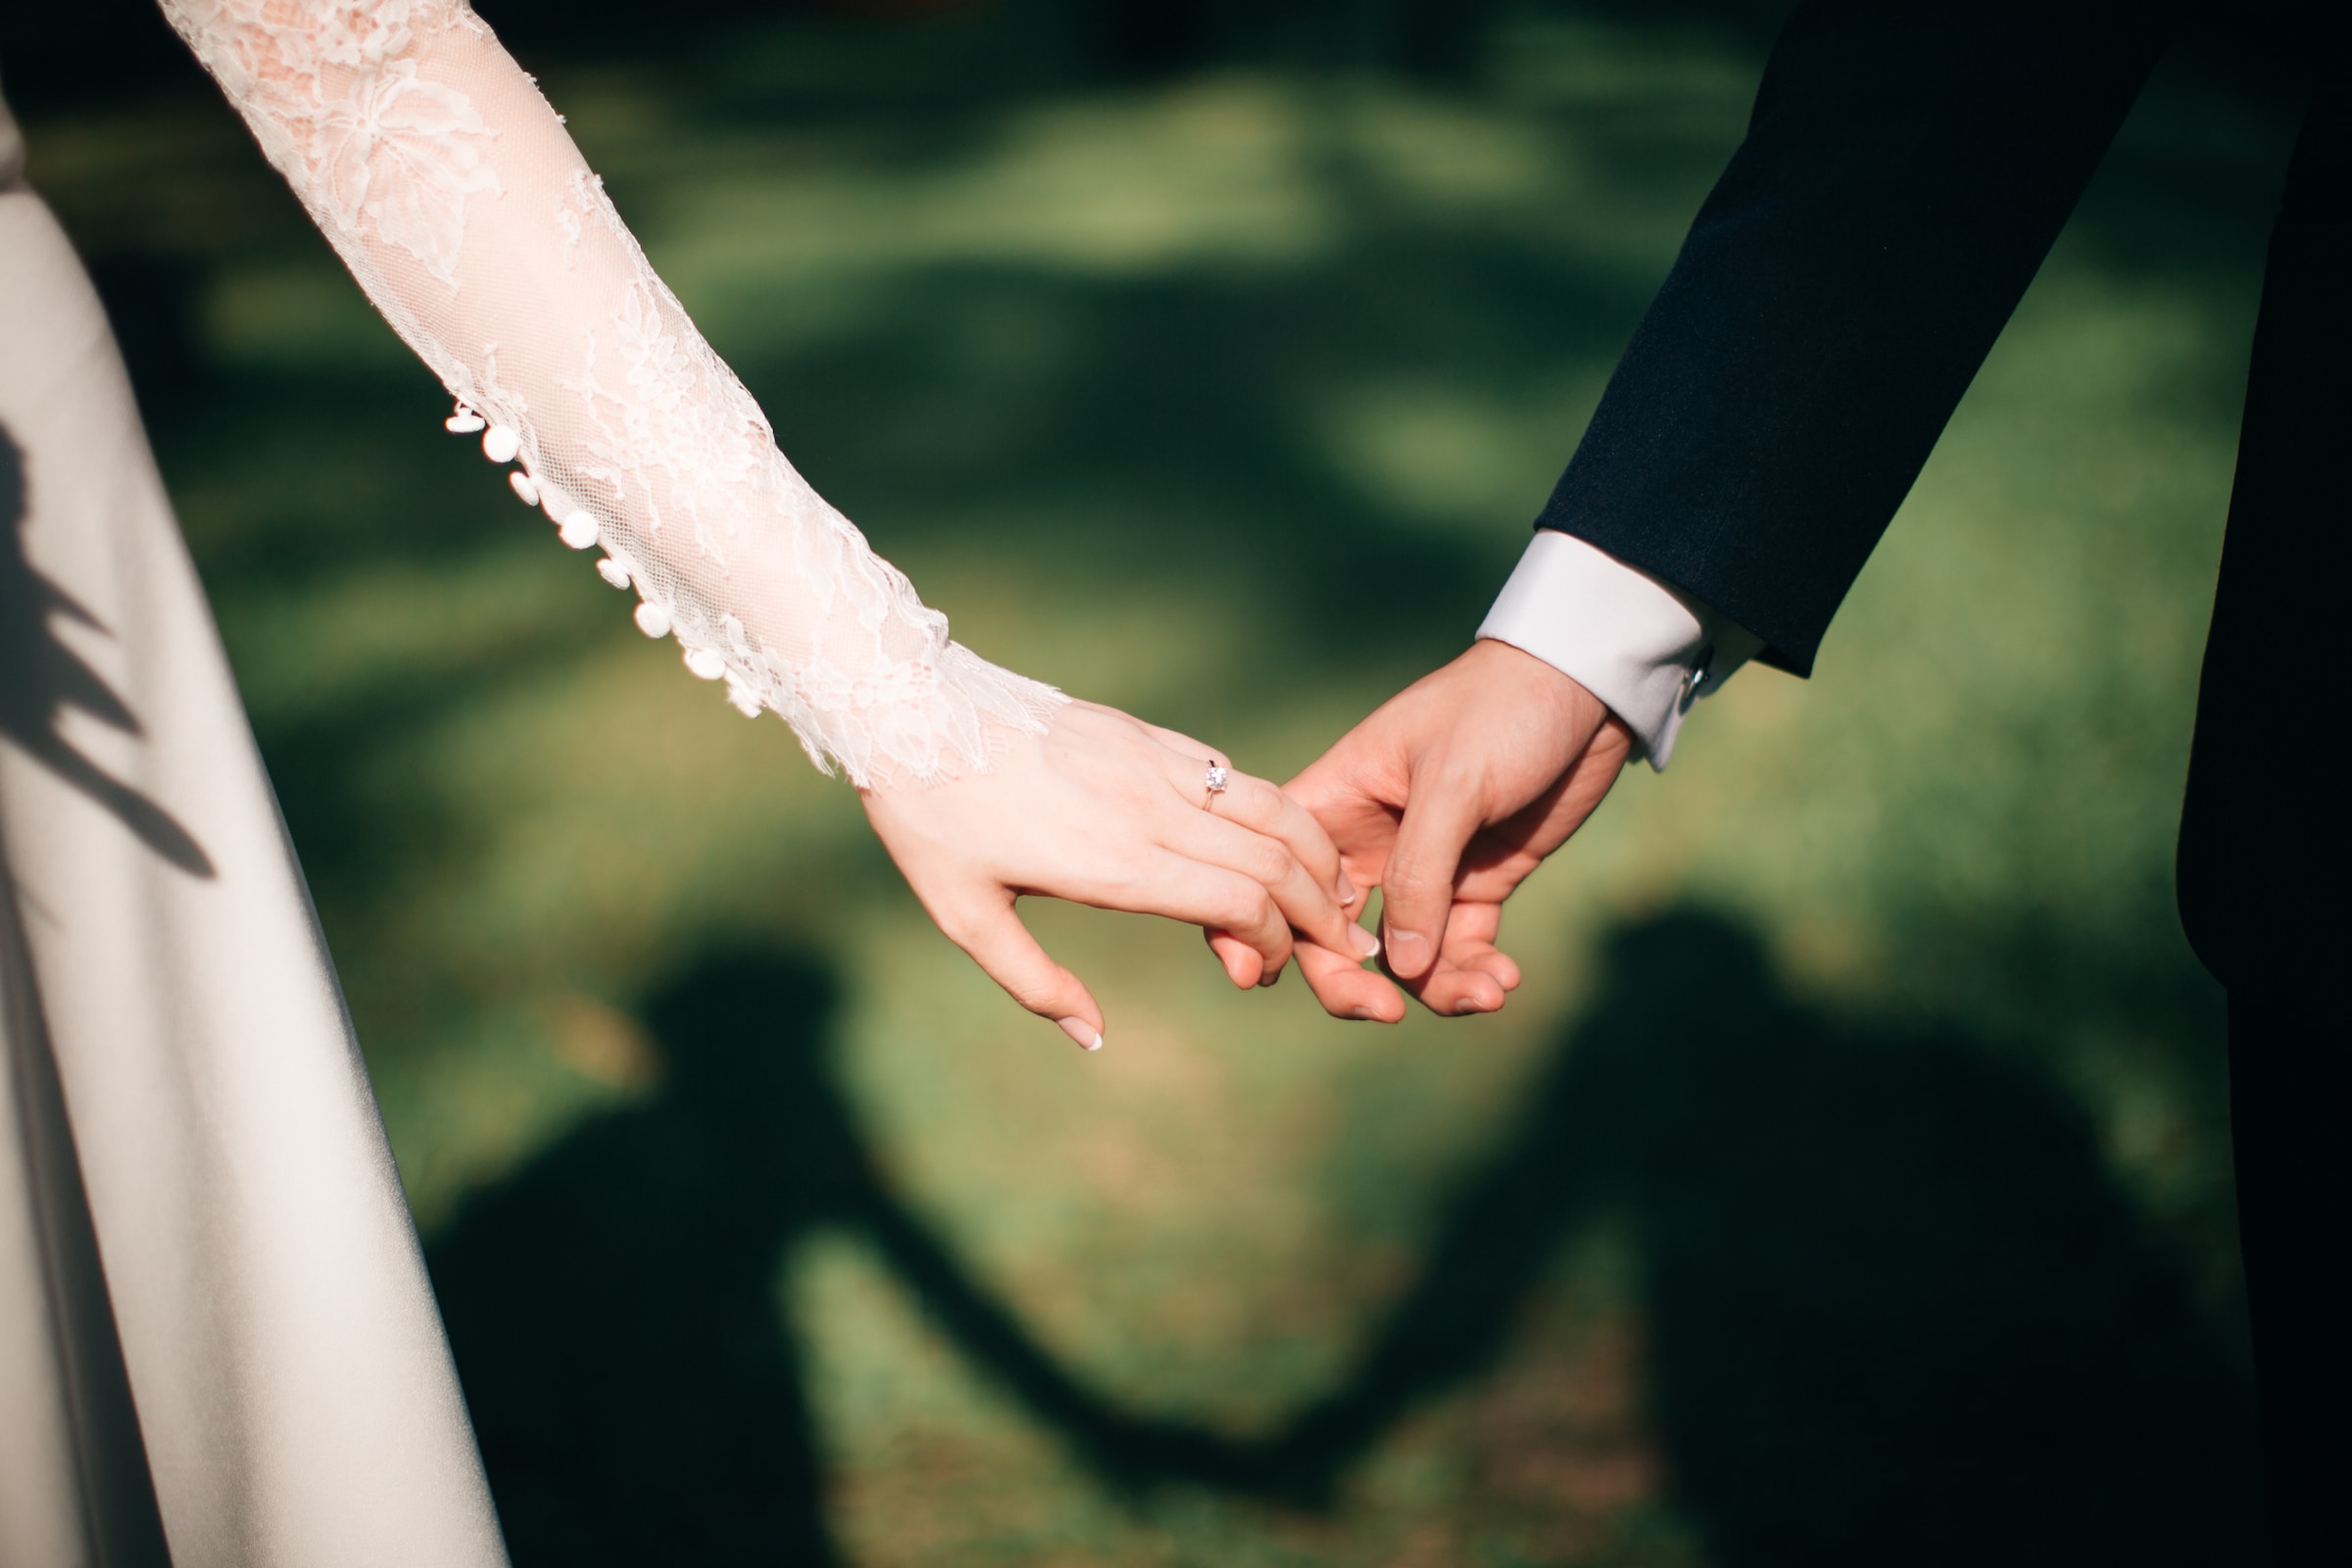 Matrimonio de la mano | Foto: Unsplash